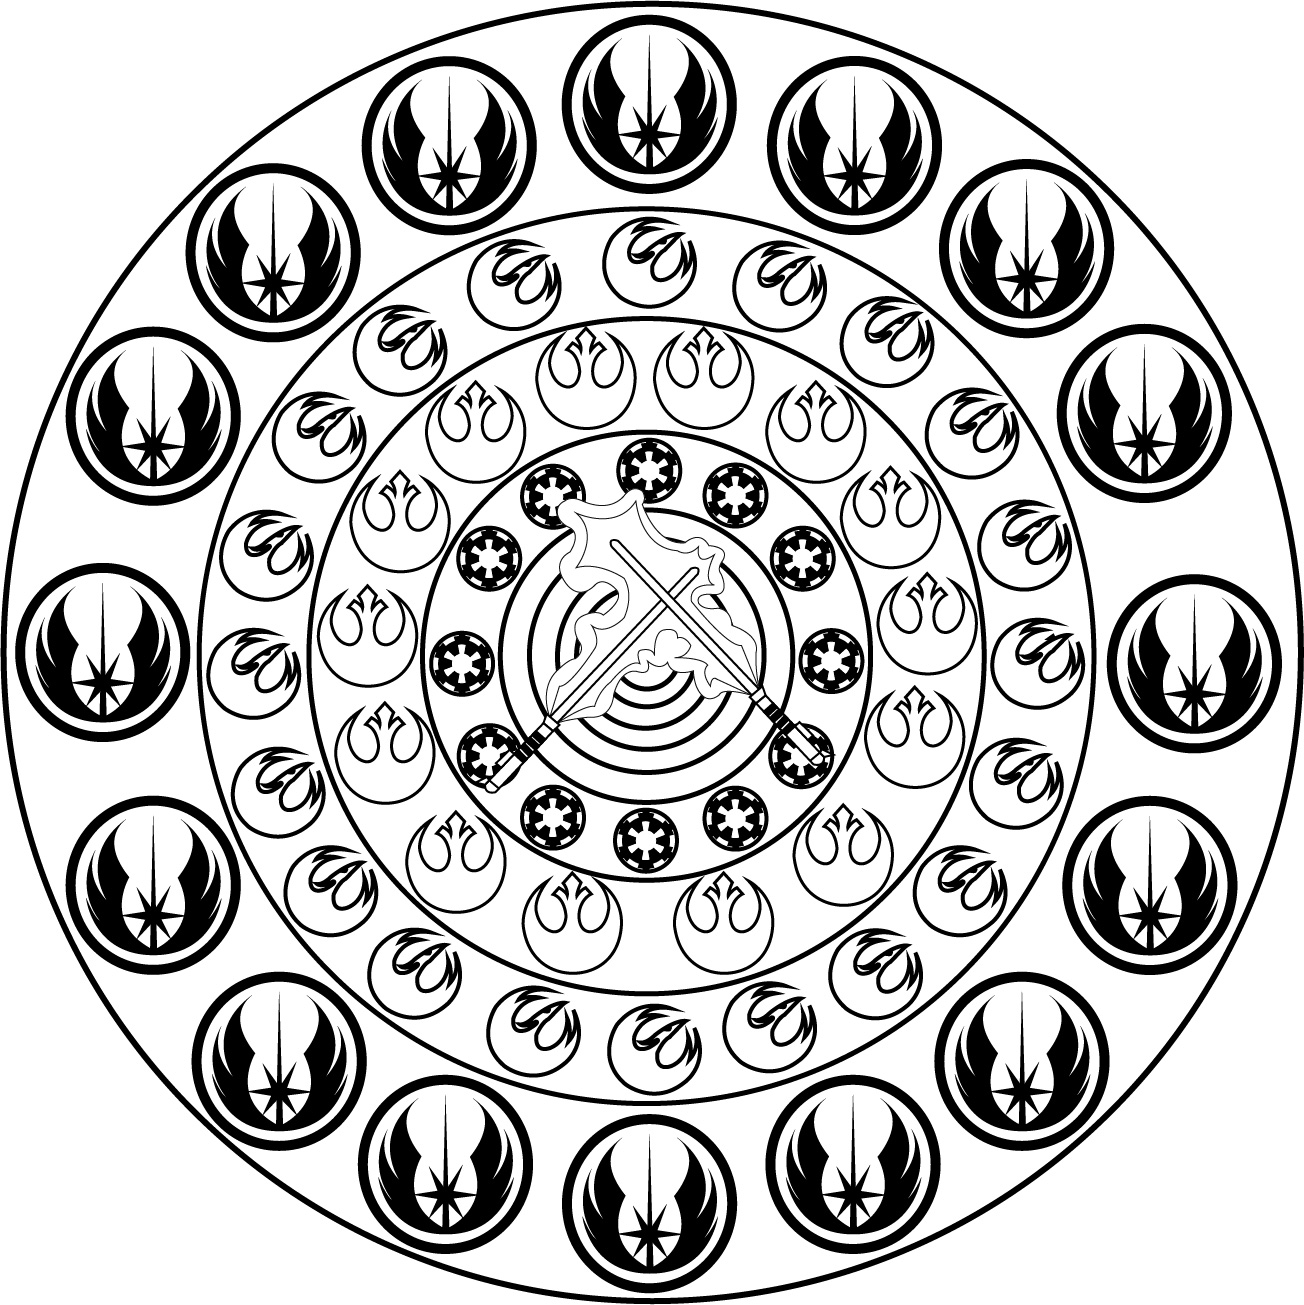 Mandala inspiré par l'univers de Star Wars, assez simple à colorier, avec notamment le fameux symbole de la rebellion.